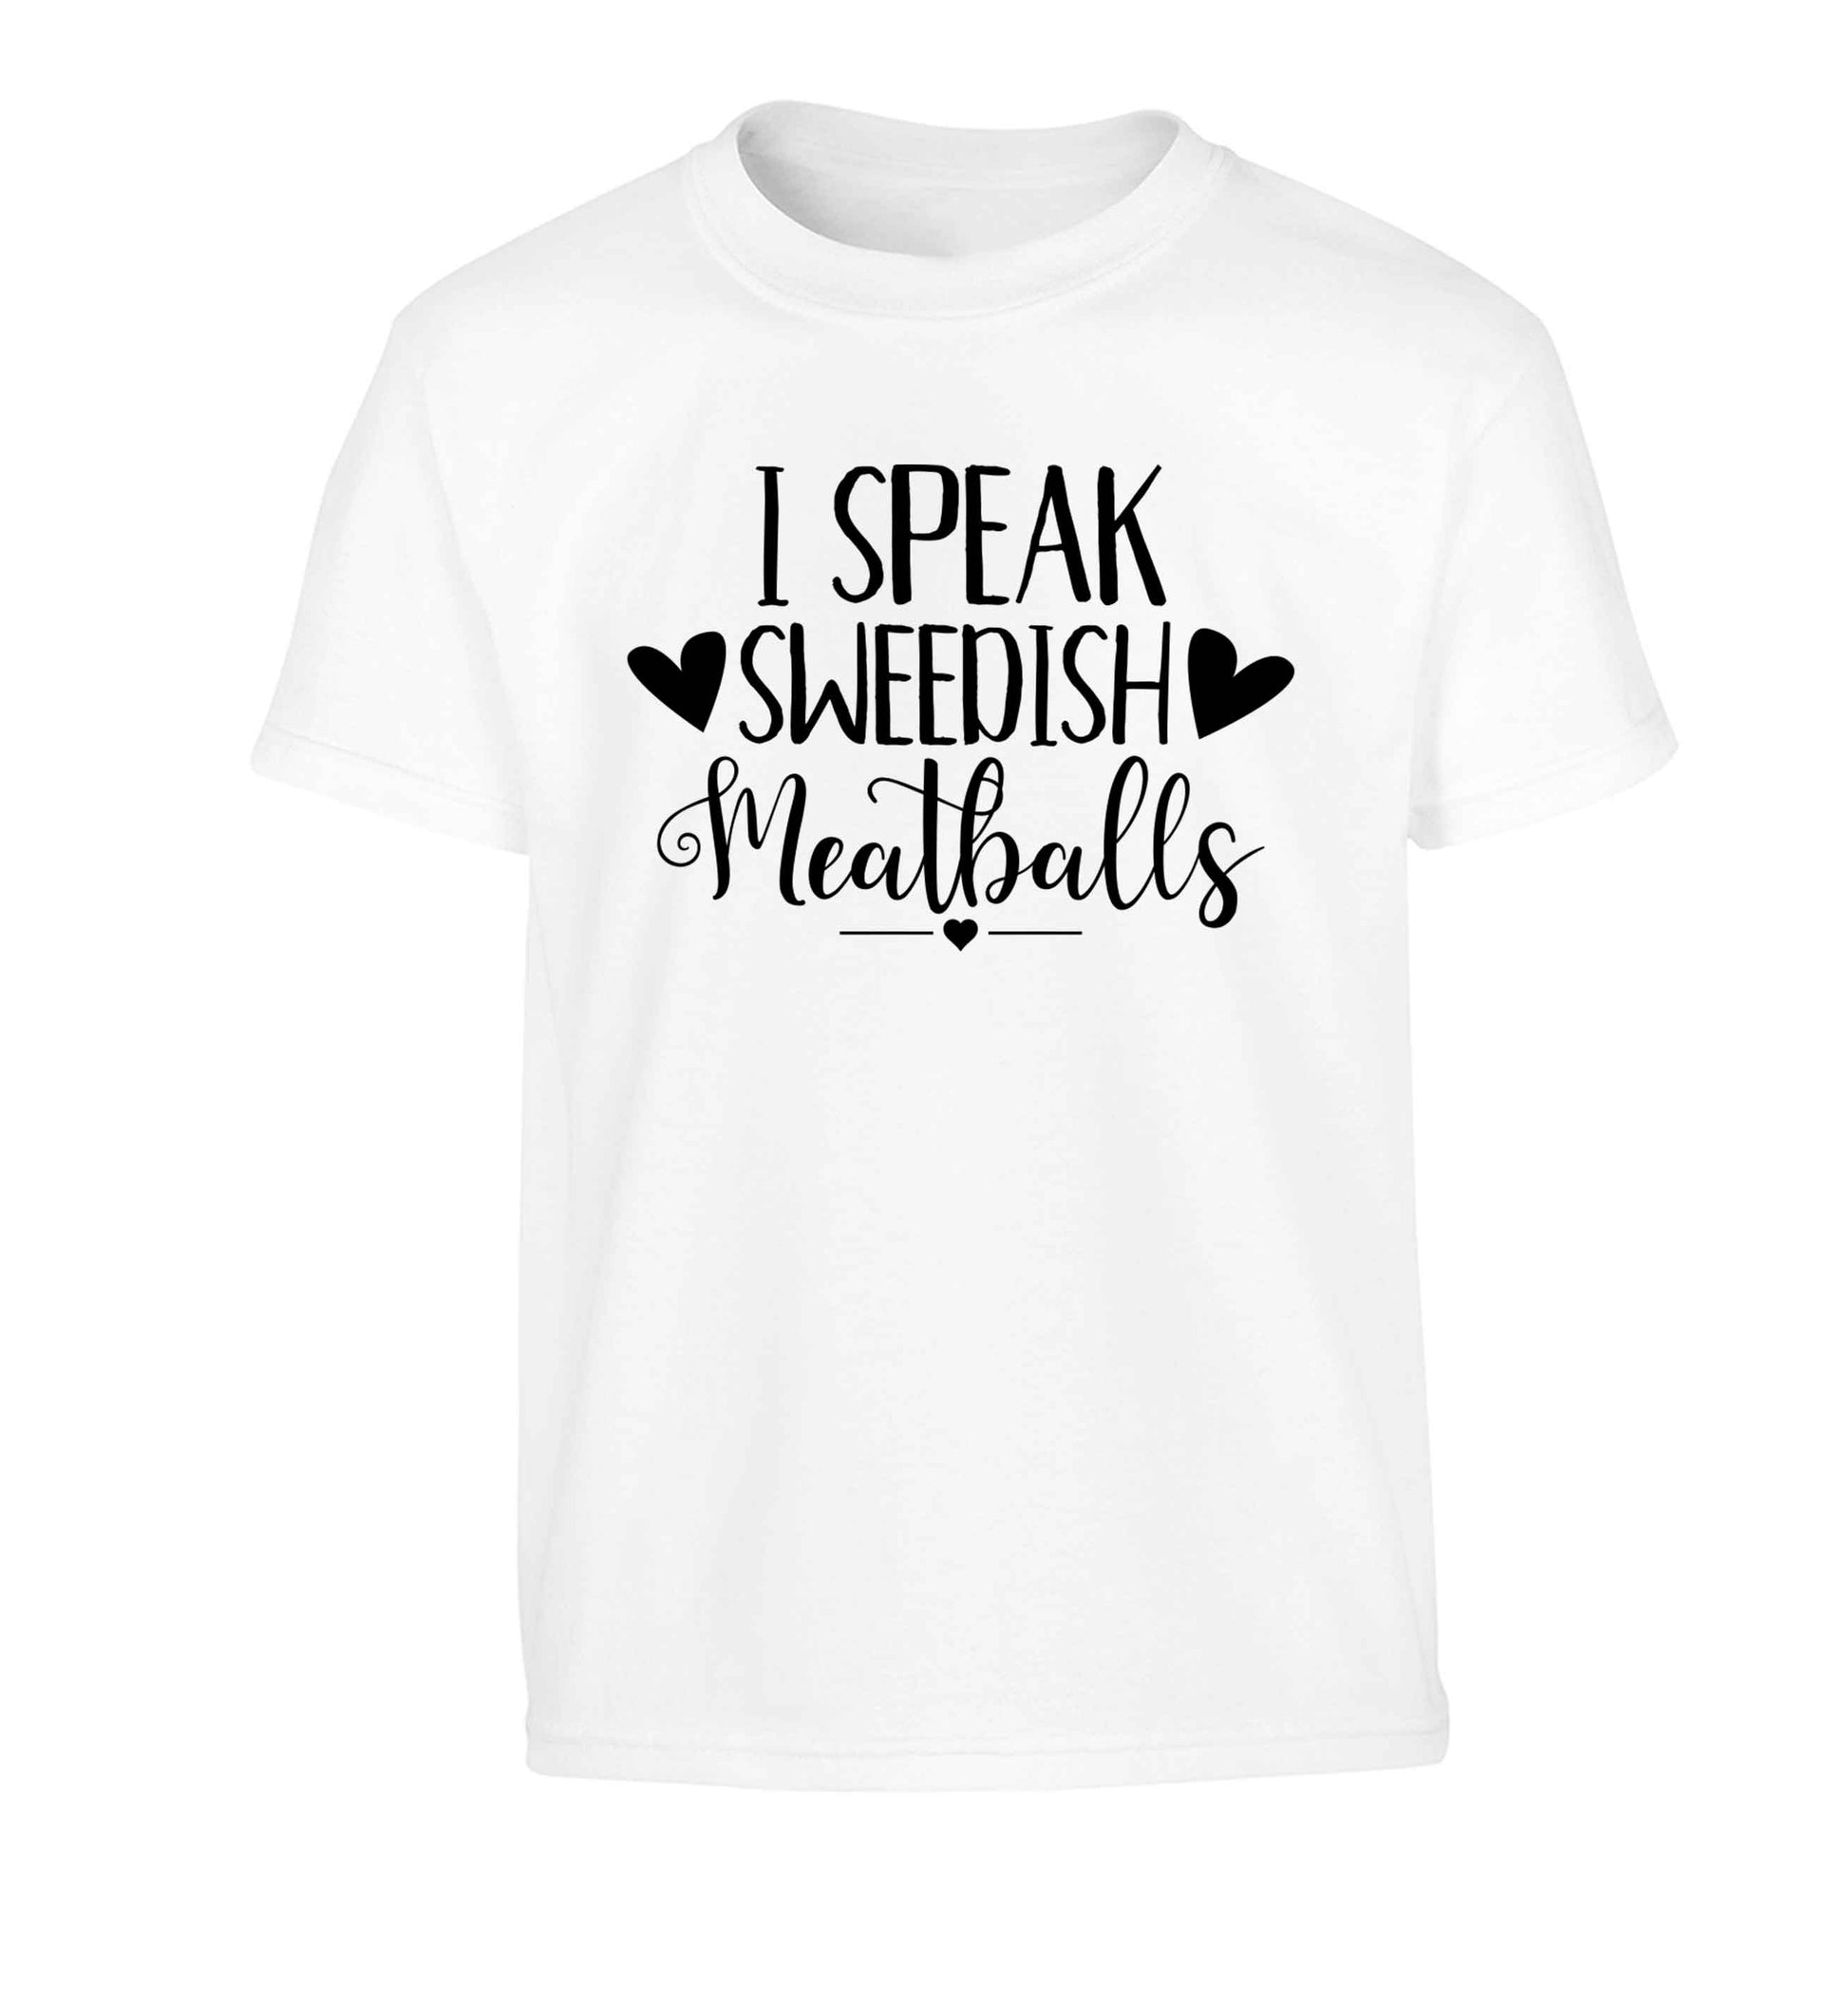 I speak sweedish...meatballs Children's white Tshirt 12-13 Years